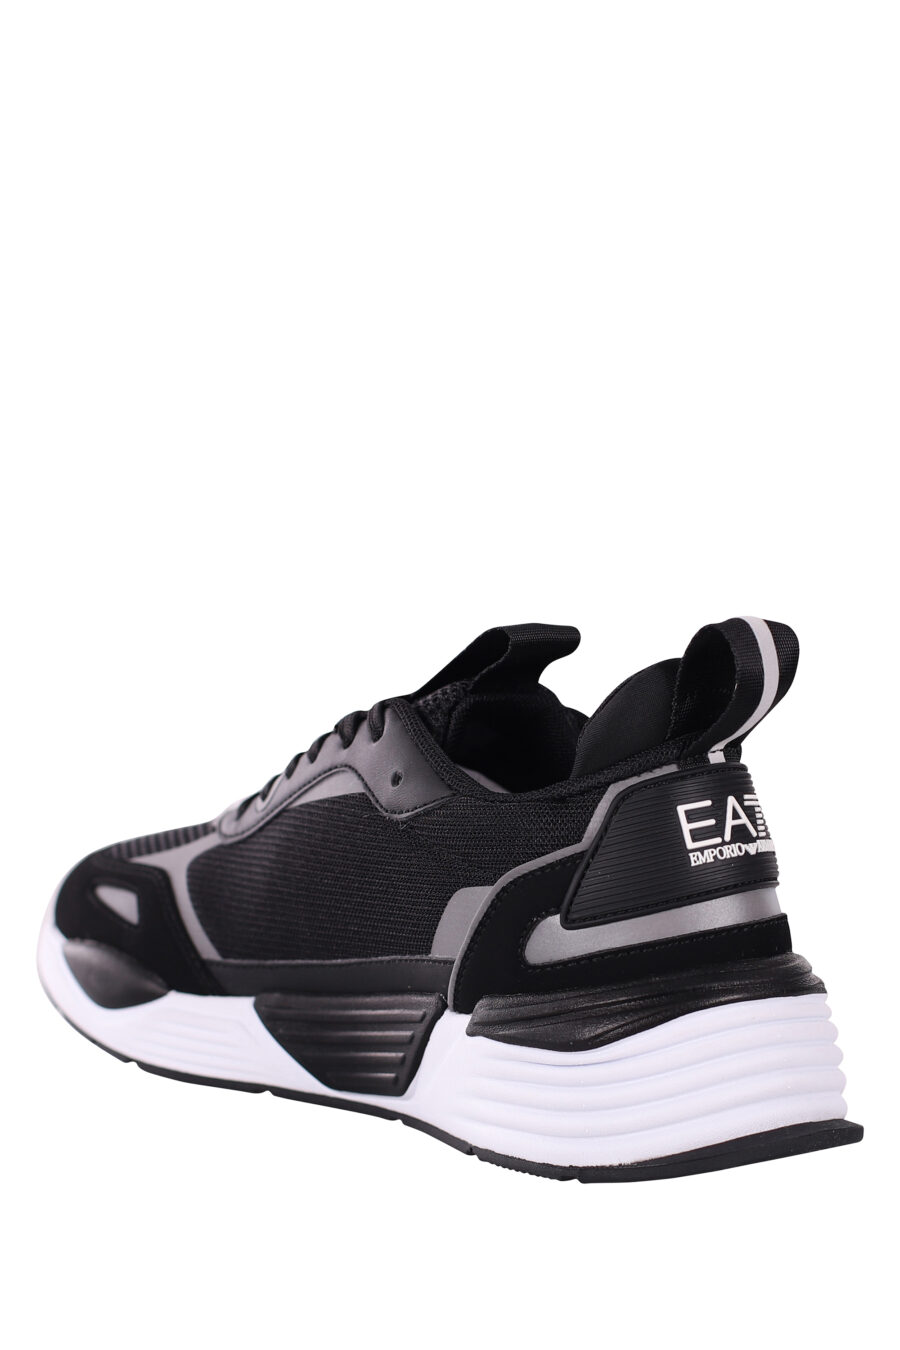 Chaussures "ace runner" noires et argentées avec logo de l'aigle - IMG 5800